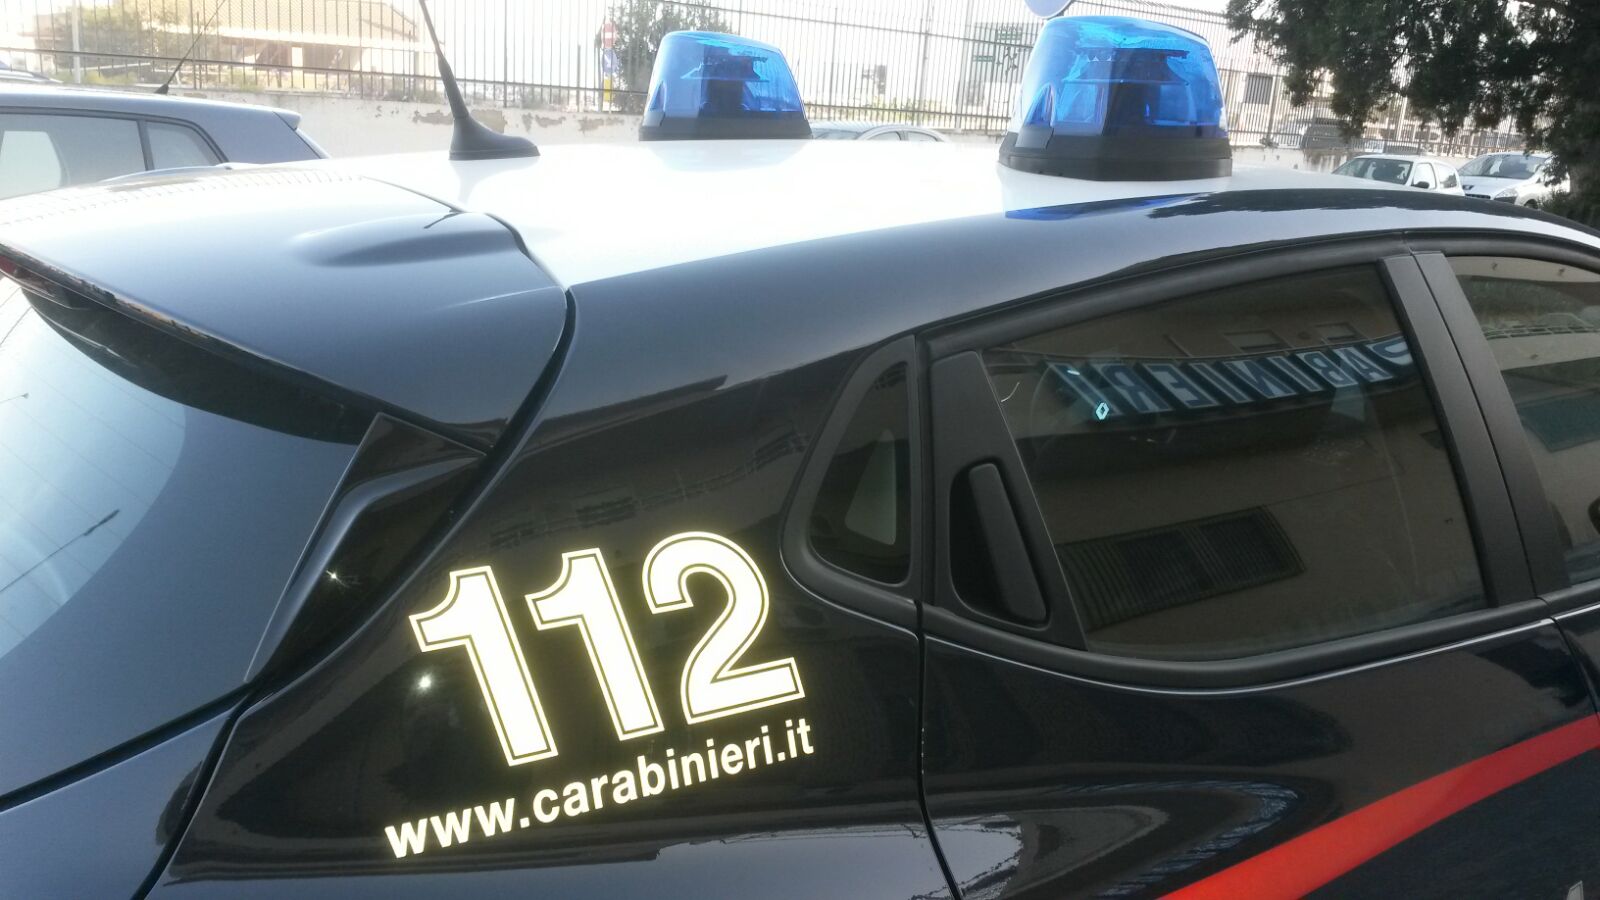 Giro di vite dei carabinieri, tre arresti nella riviera jonica. FOTO